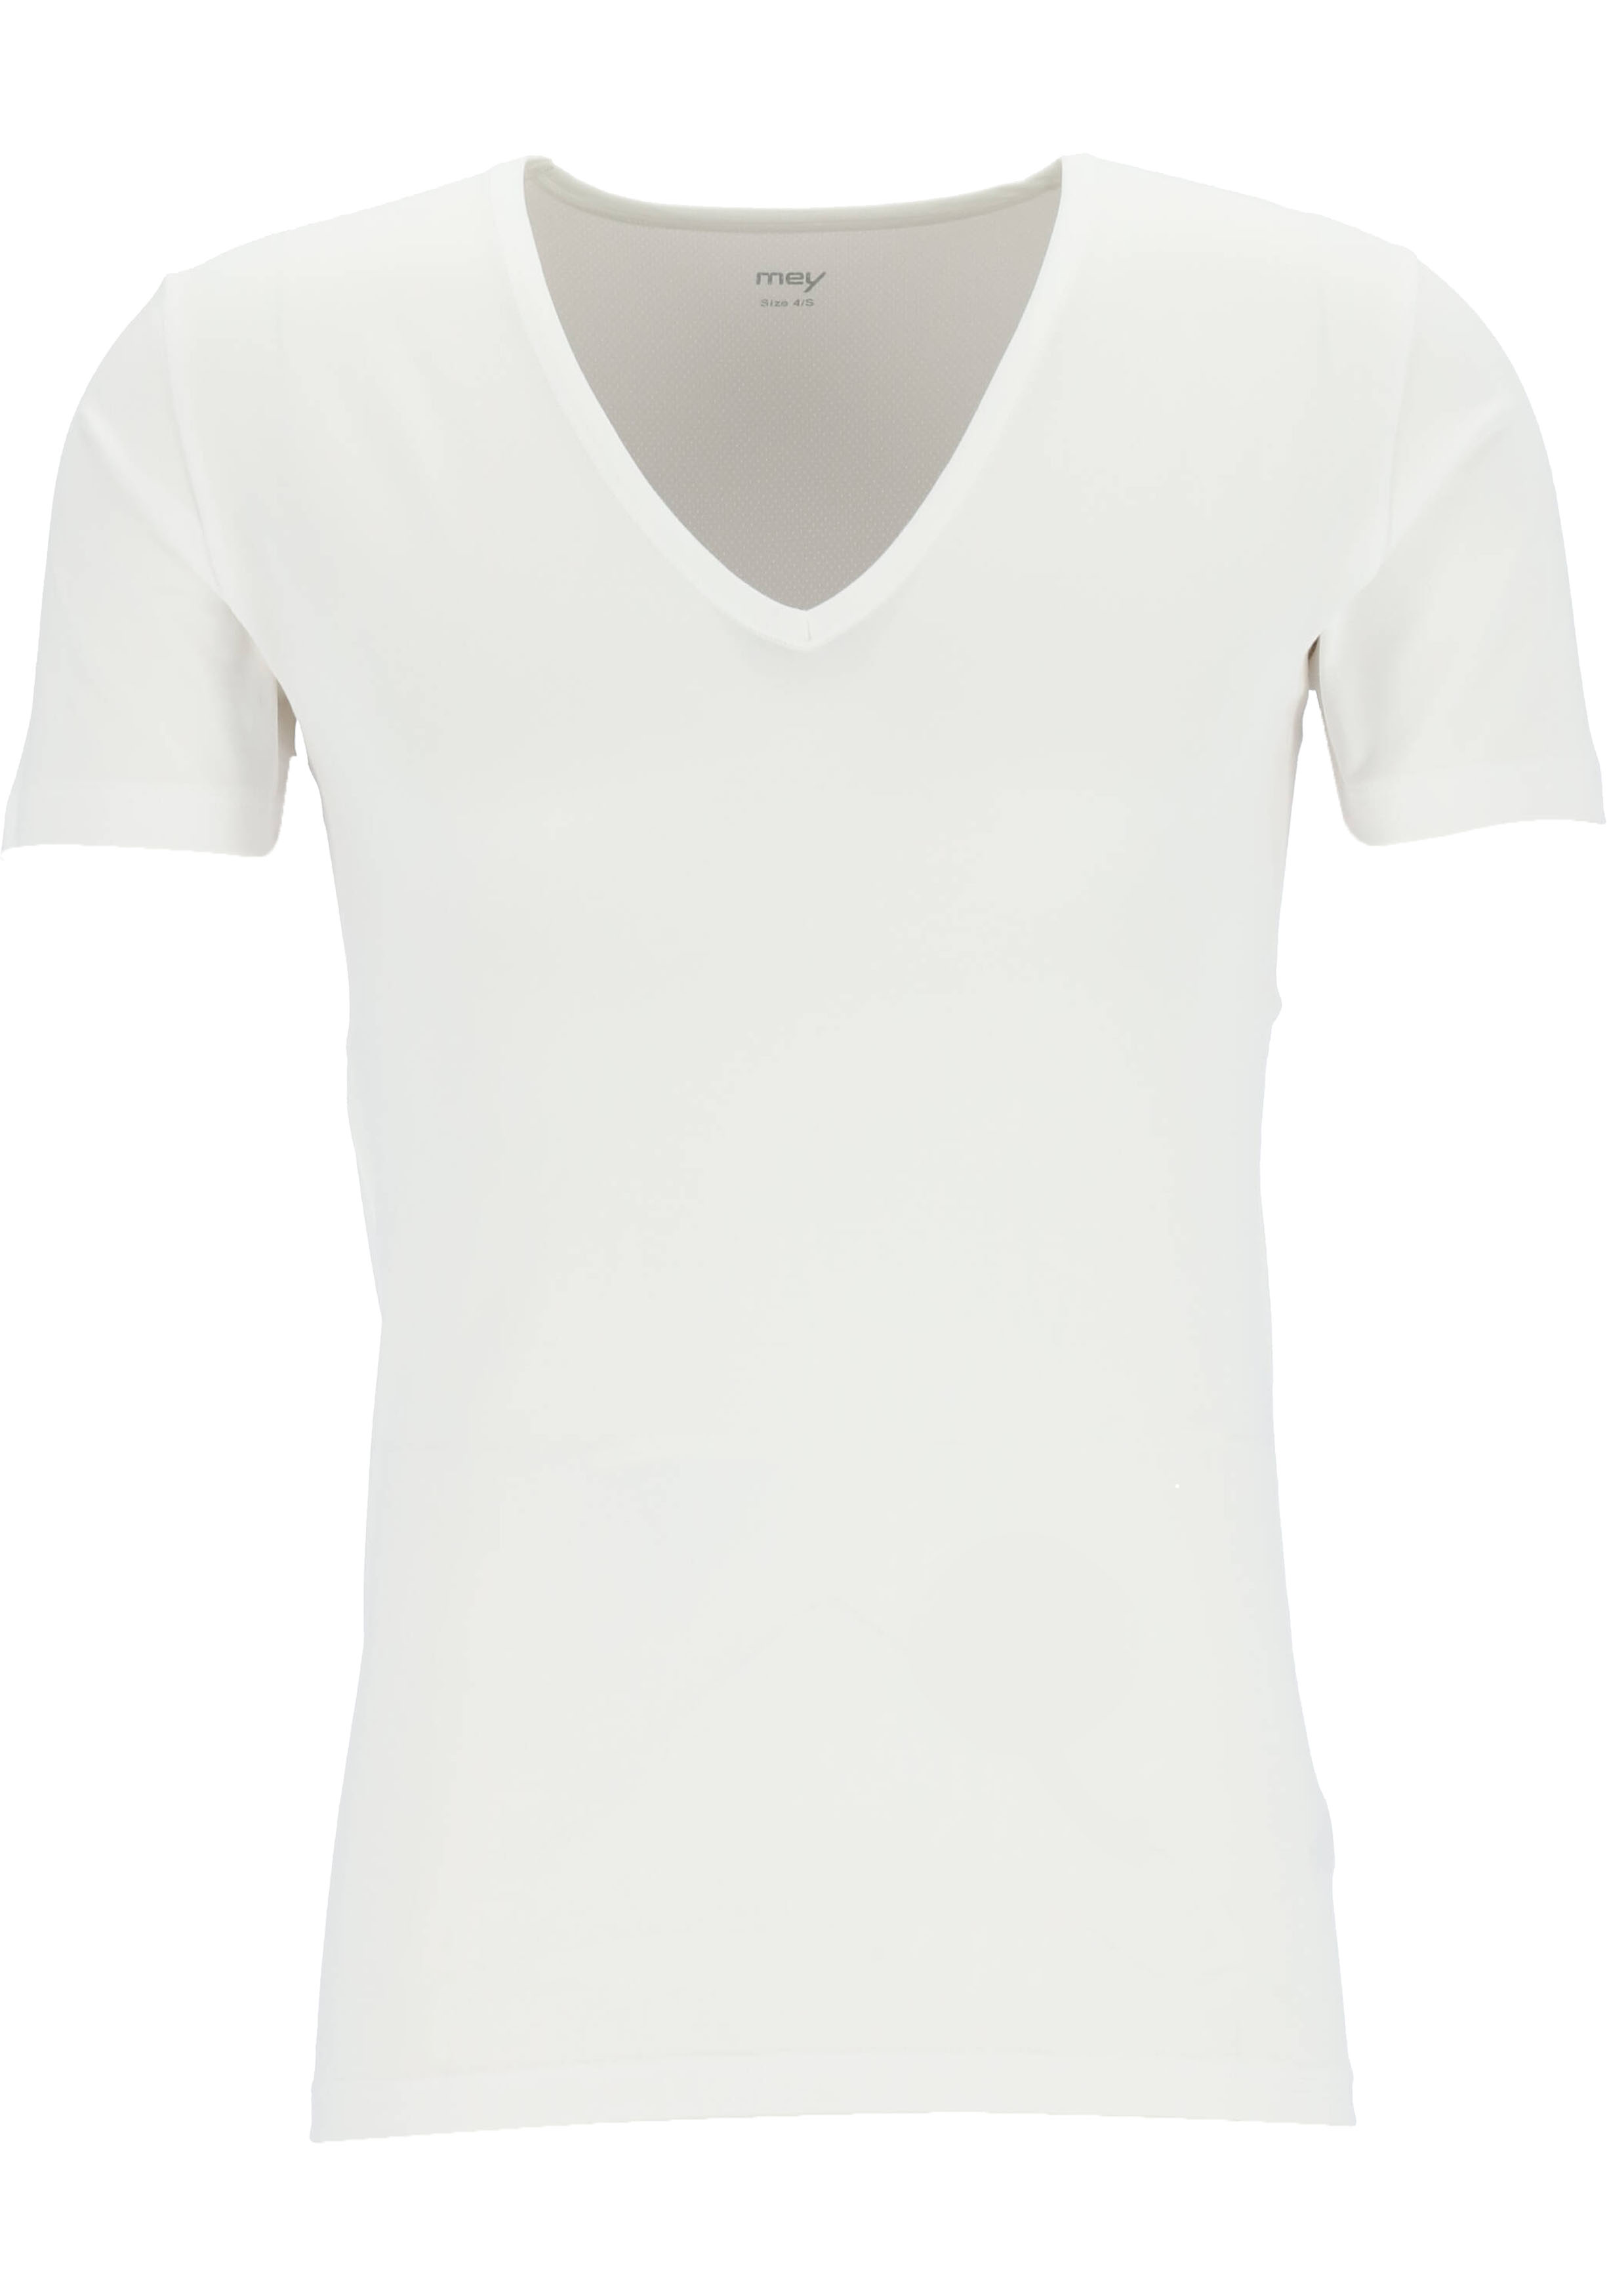 Handelsmerk Verwoesting Volgen Mey Dry Cotton functional T-shirt (1-pack), heren T-shirt regular fit... -  Shop de nieuwste voorjaarsmode